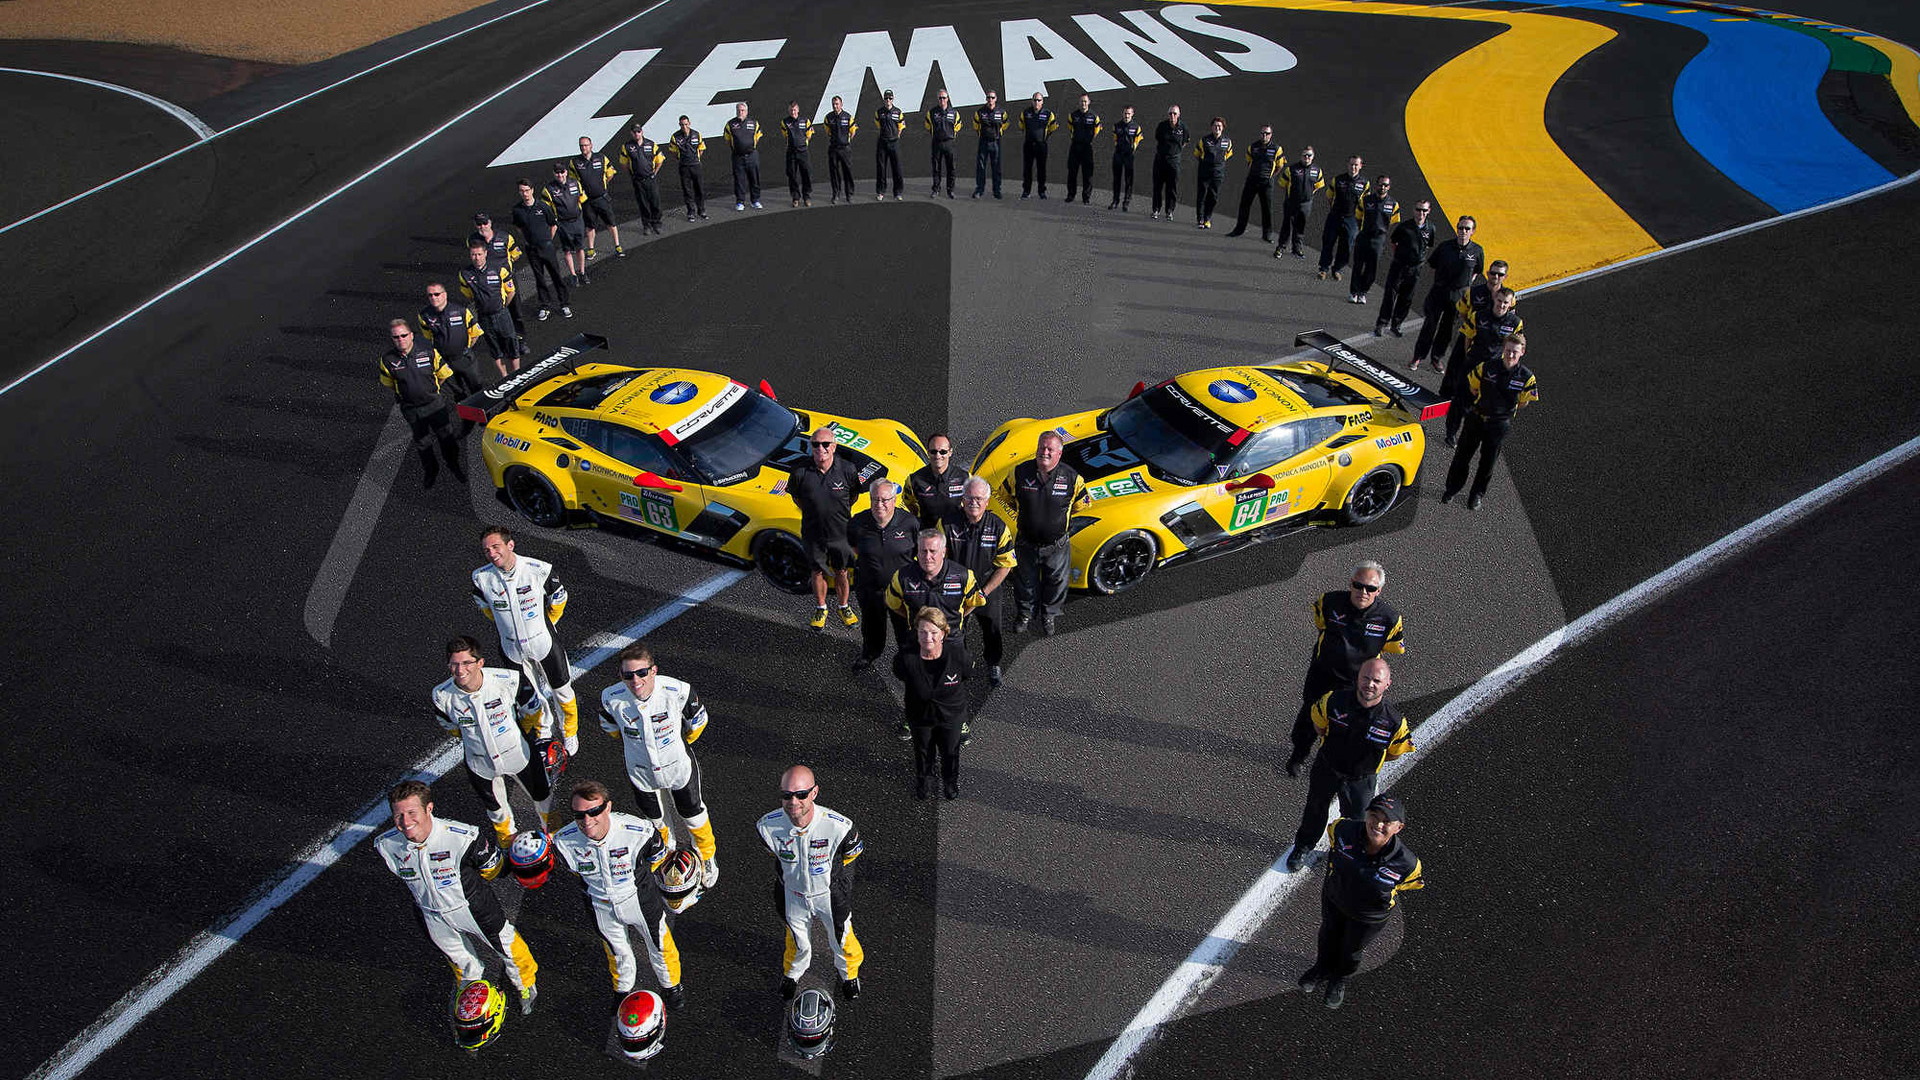 2015 Chevrolet Corvette C7.R race car at the 24 Hours of Le Mans